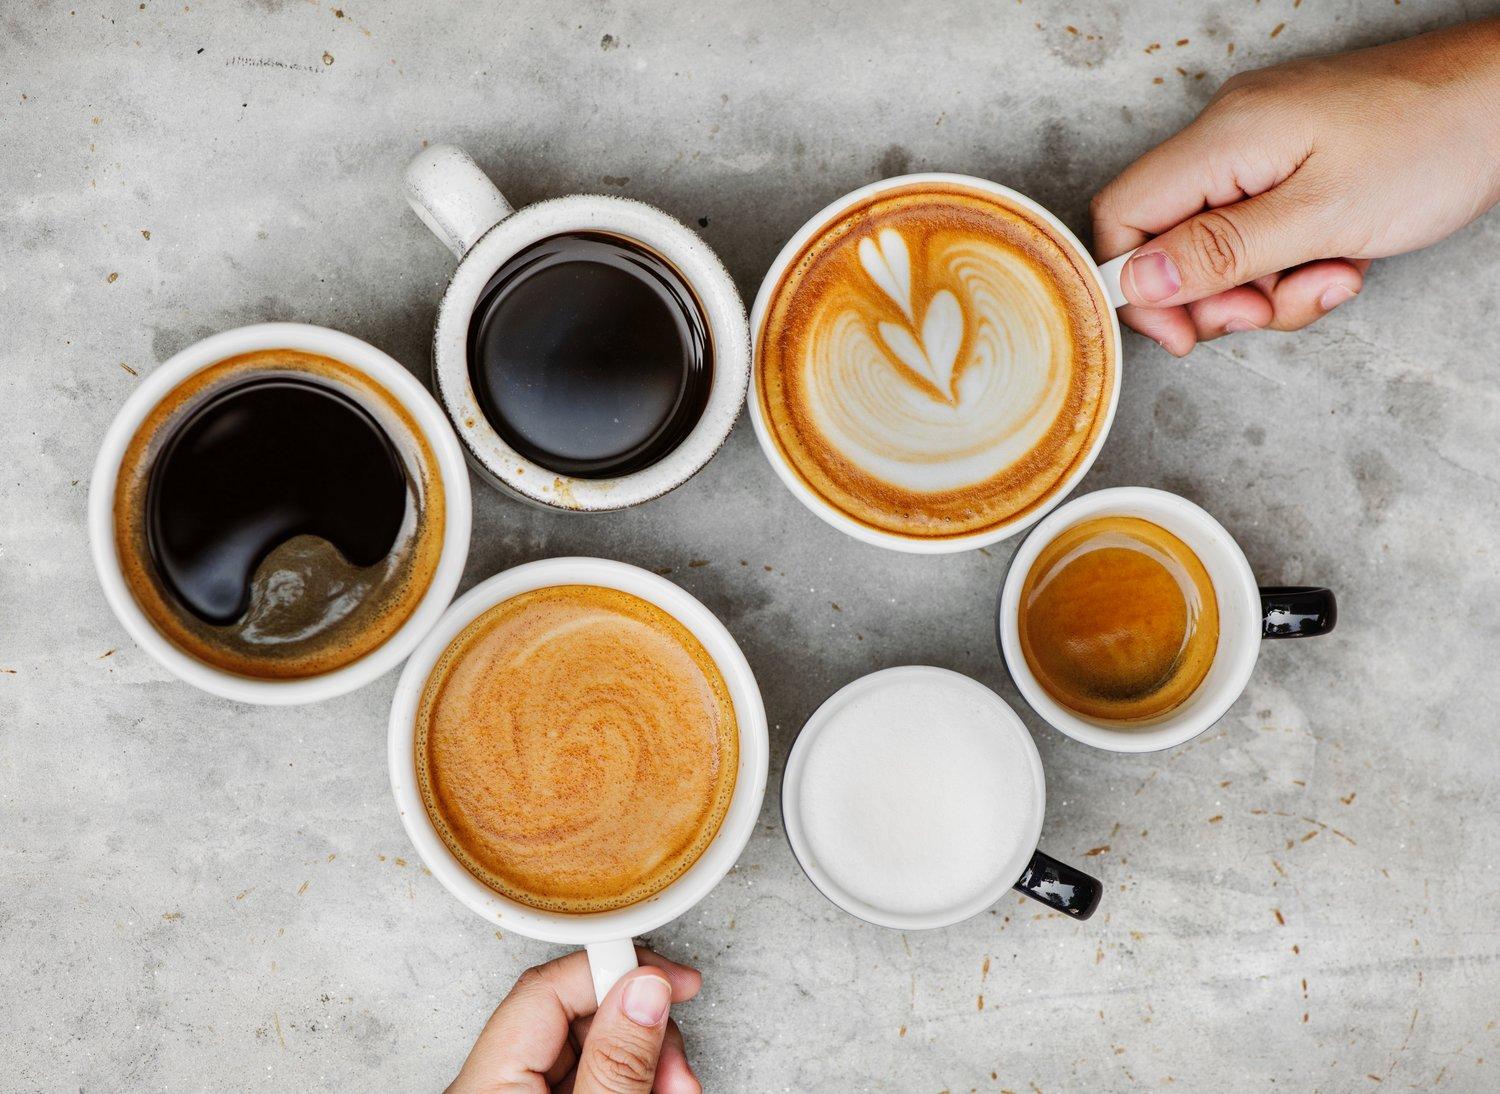 Nghiên cứu khoa học: Uống cà phê giúp sống thọ hơn và đây là số lượng nên uống mỗi ngày - Ảnh 1.